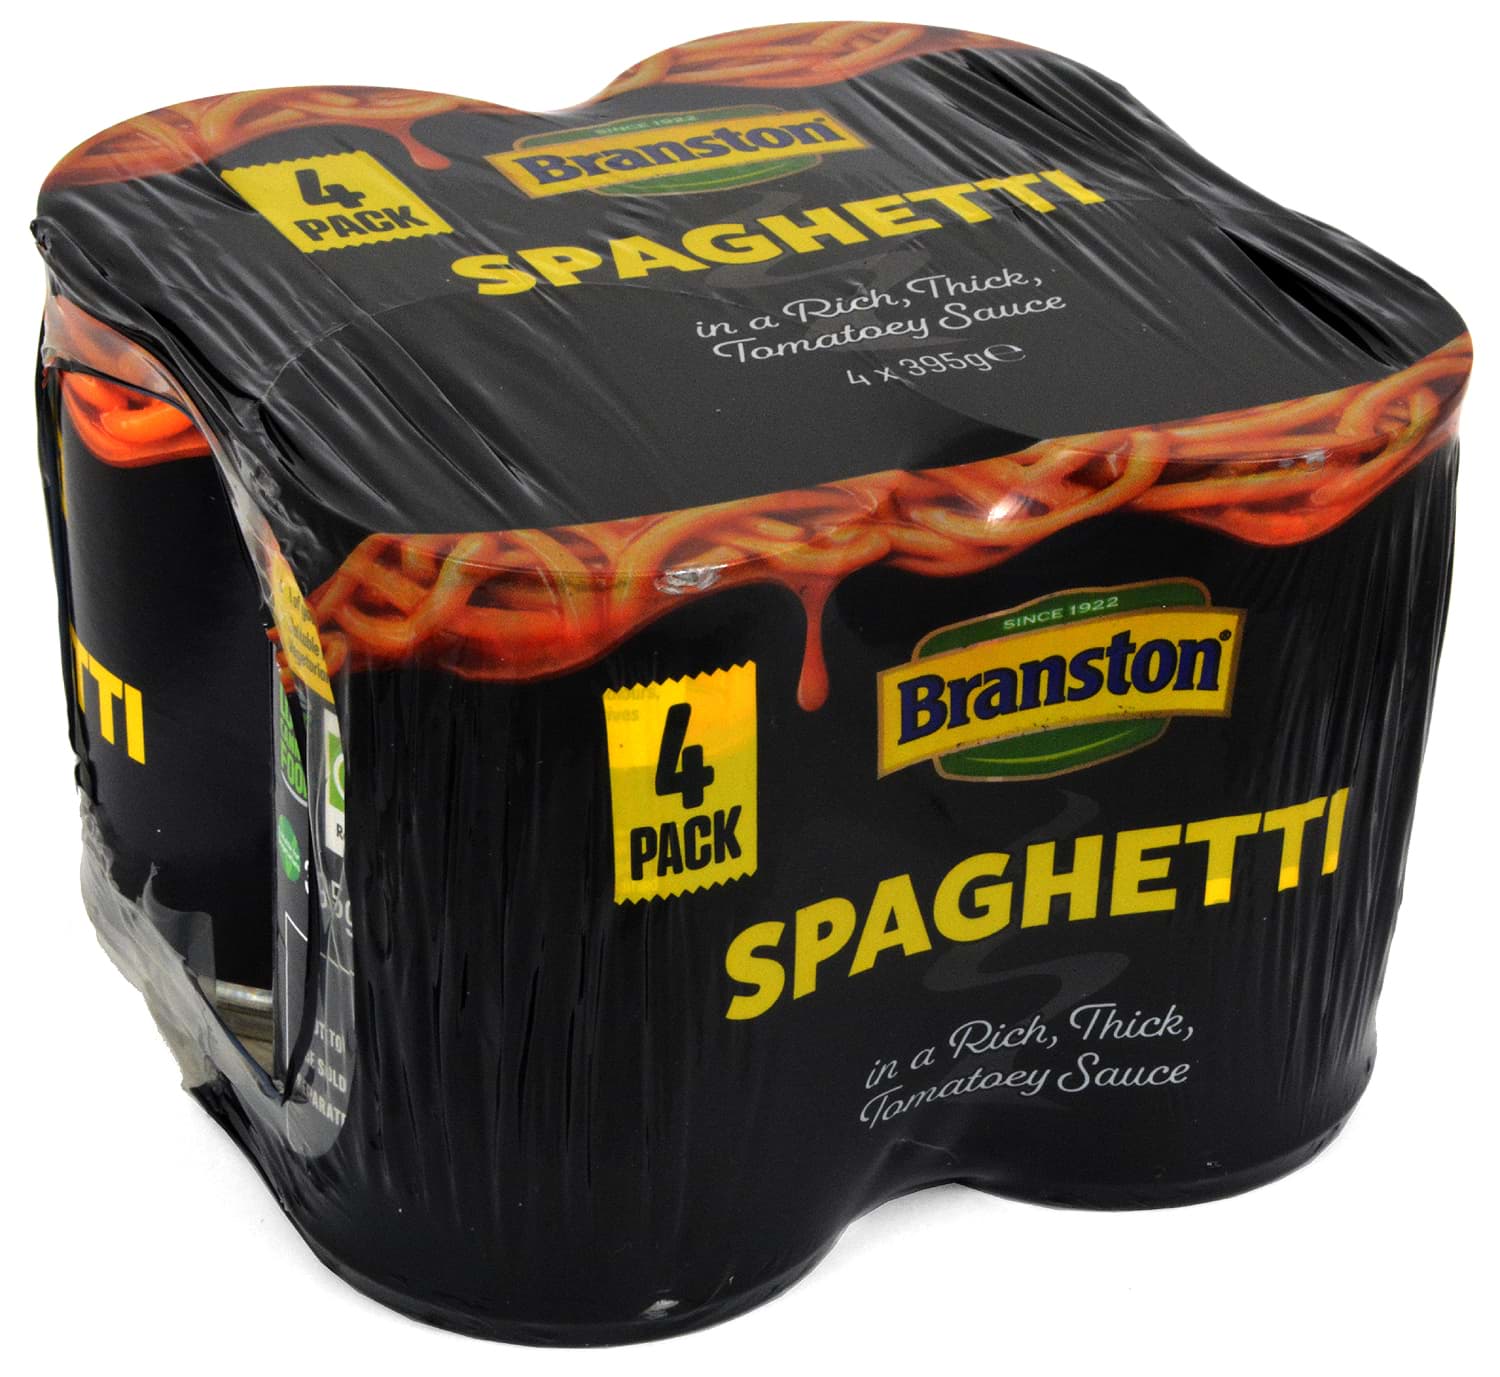 Picture of Branston Spaghetti in Tomato Sauce 4 x 395g